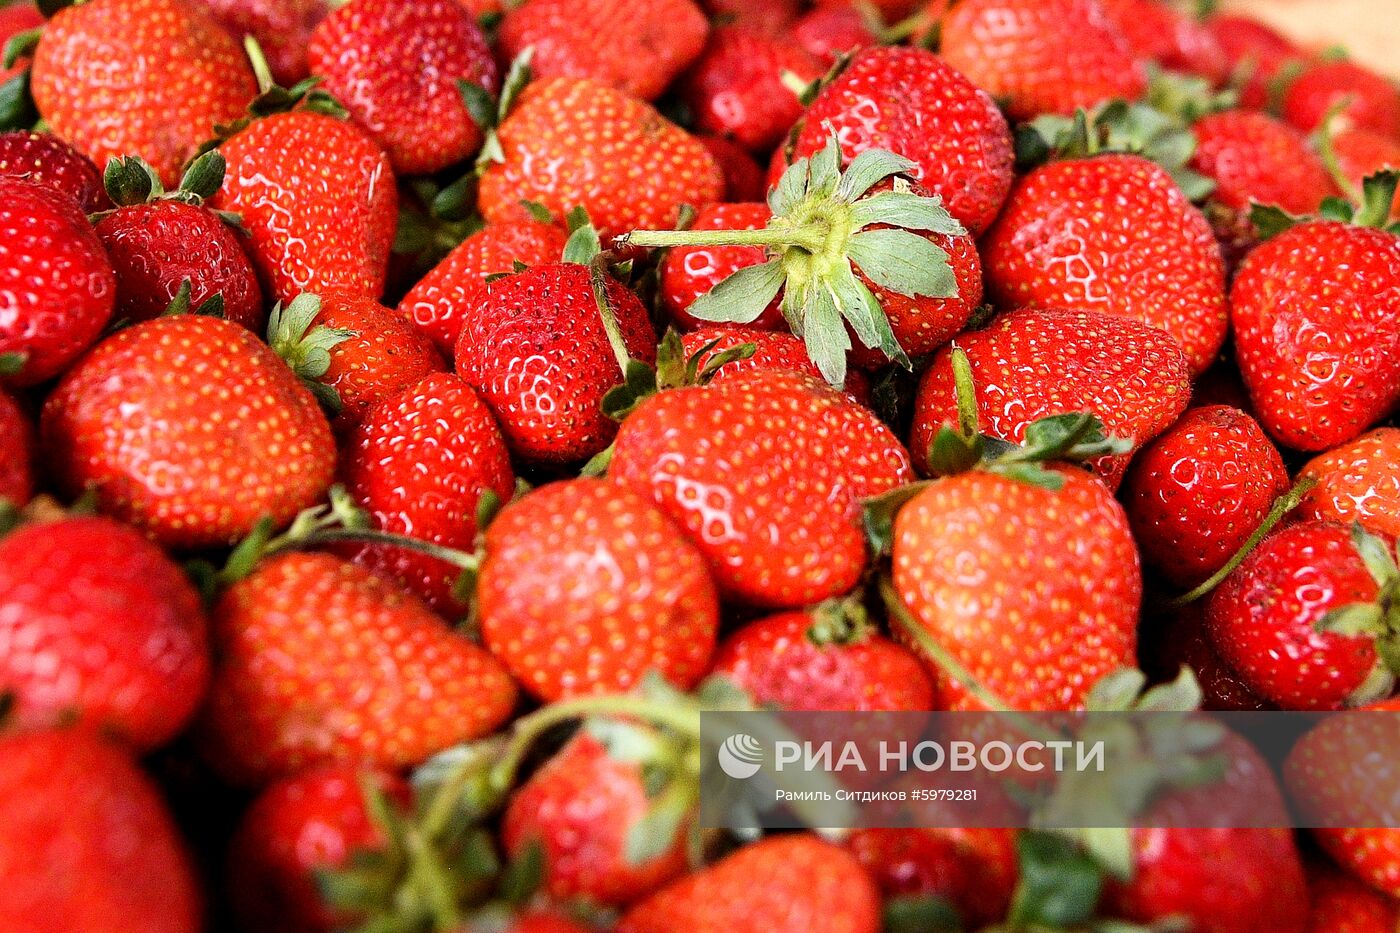 Продажа овощей и фруктов в Москве